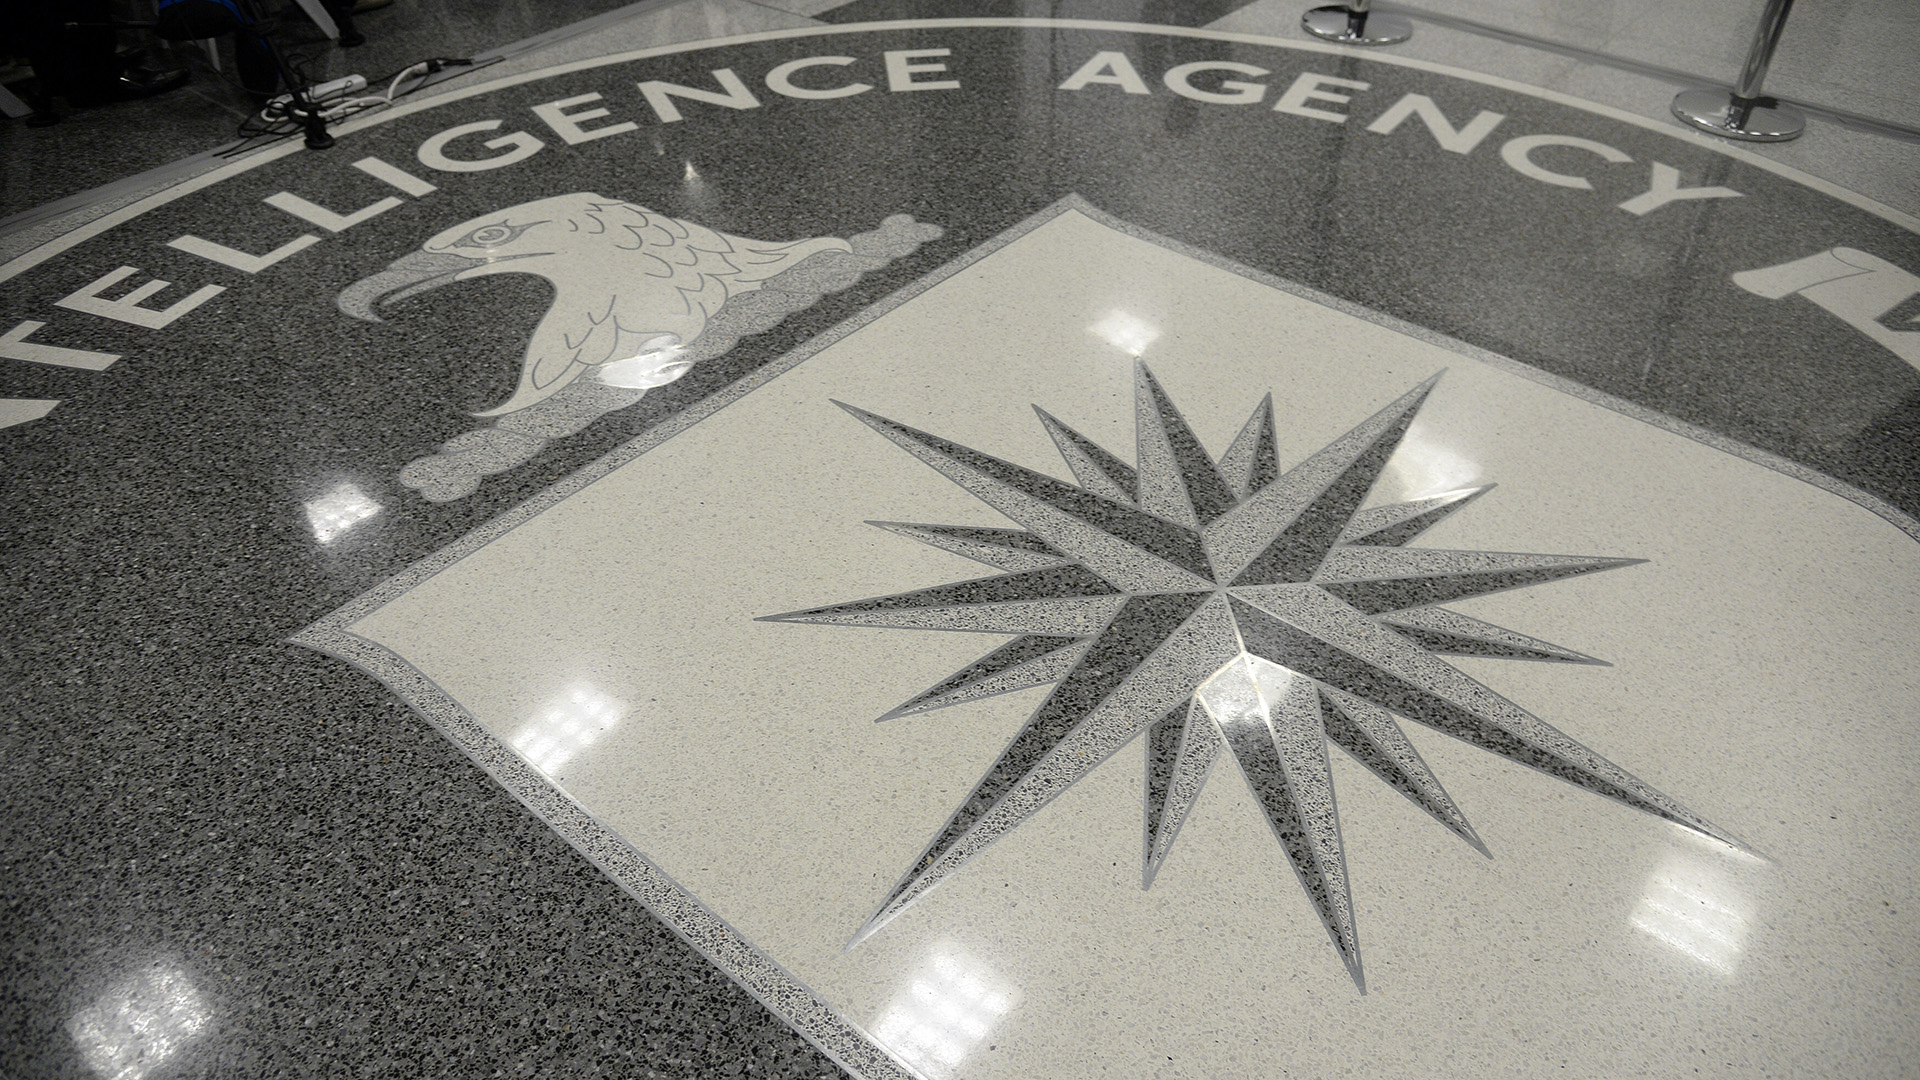 Le perdite del Pentagono: uno sguardo all’interno della sala macchine spia